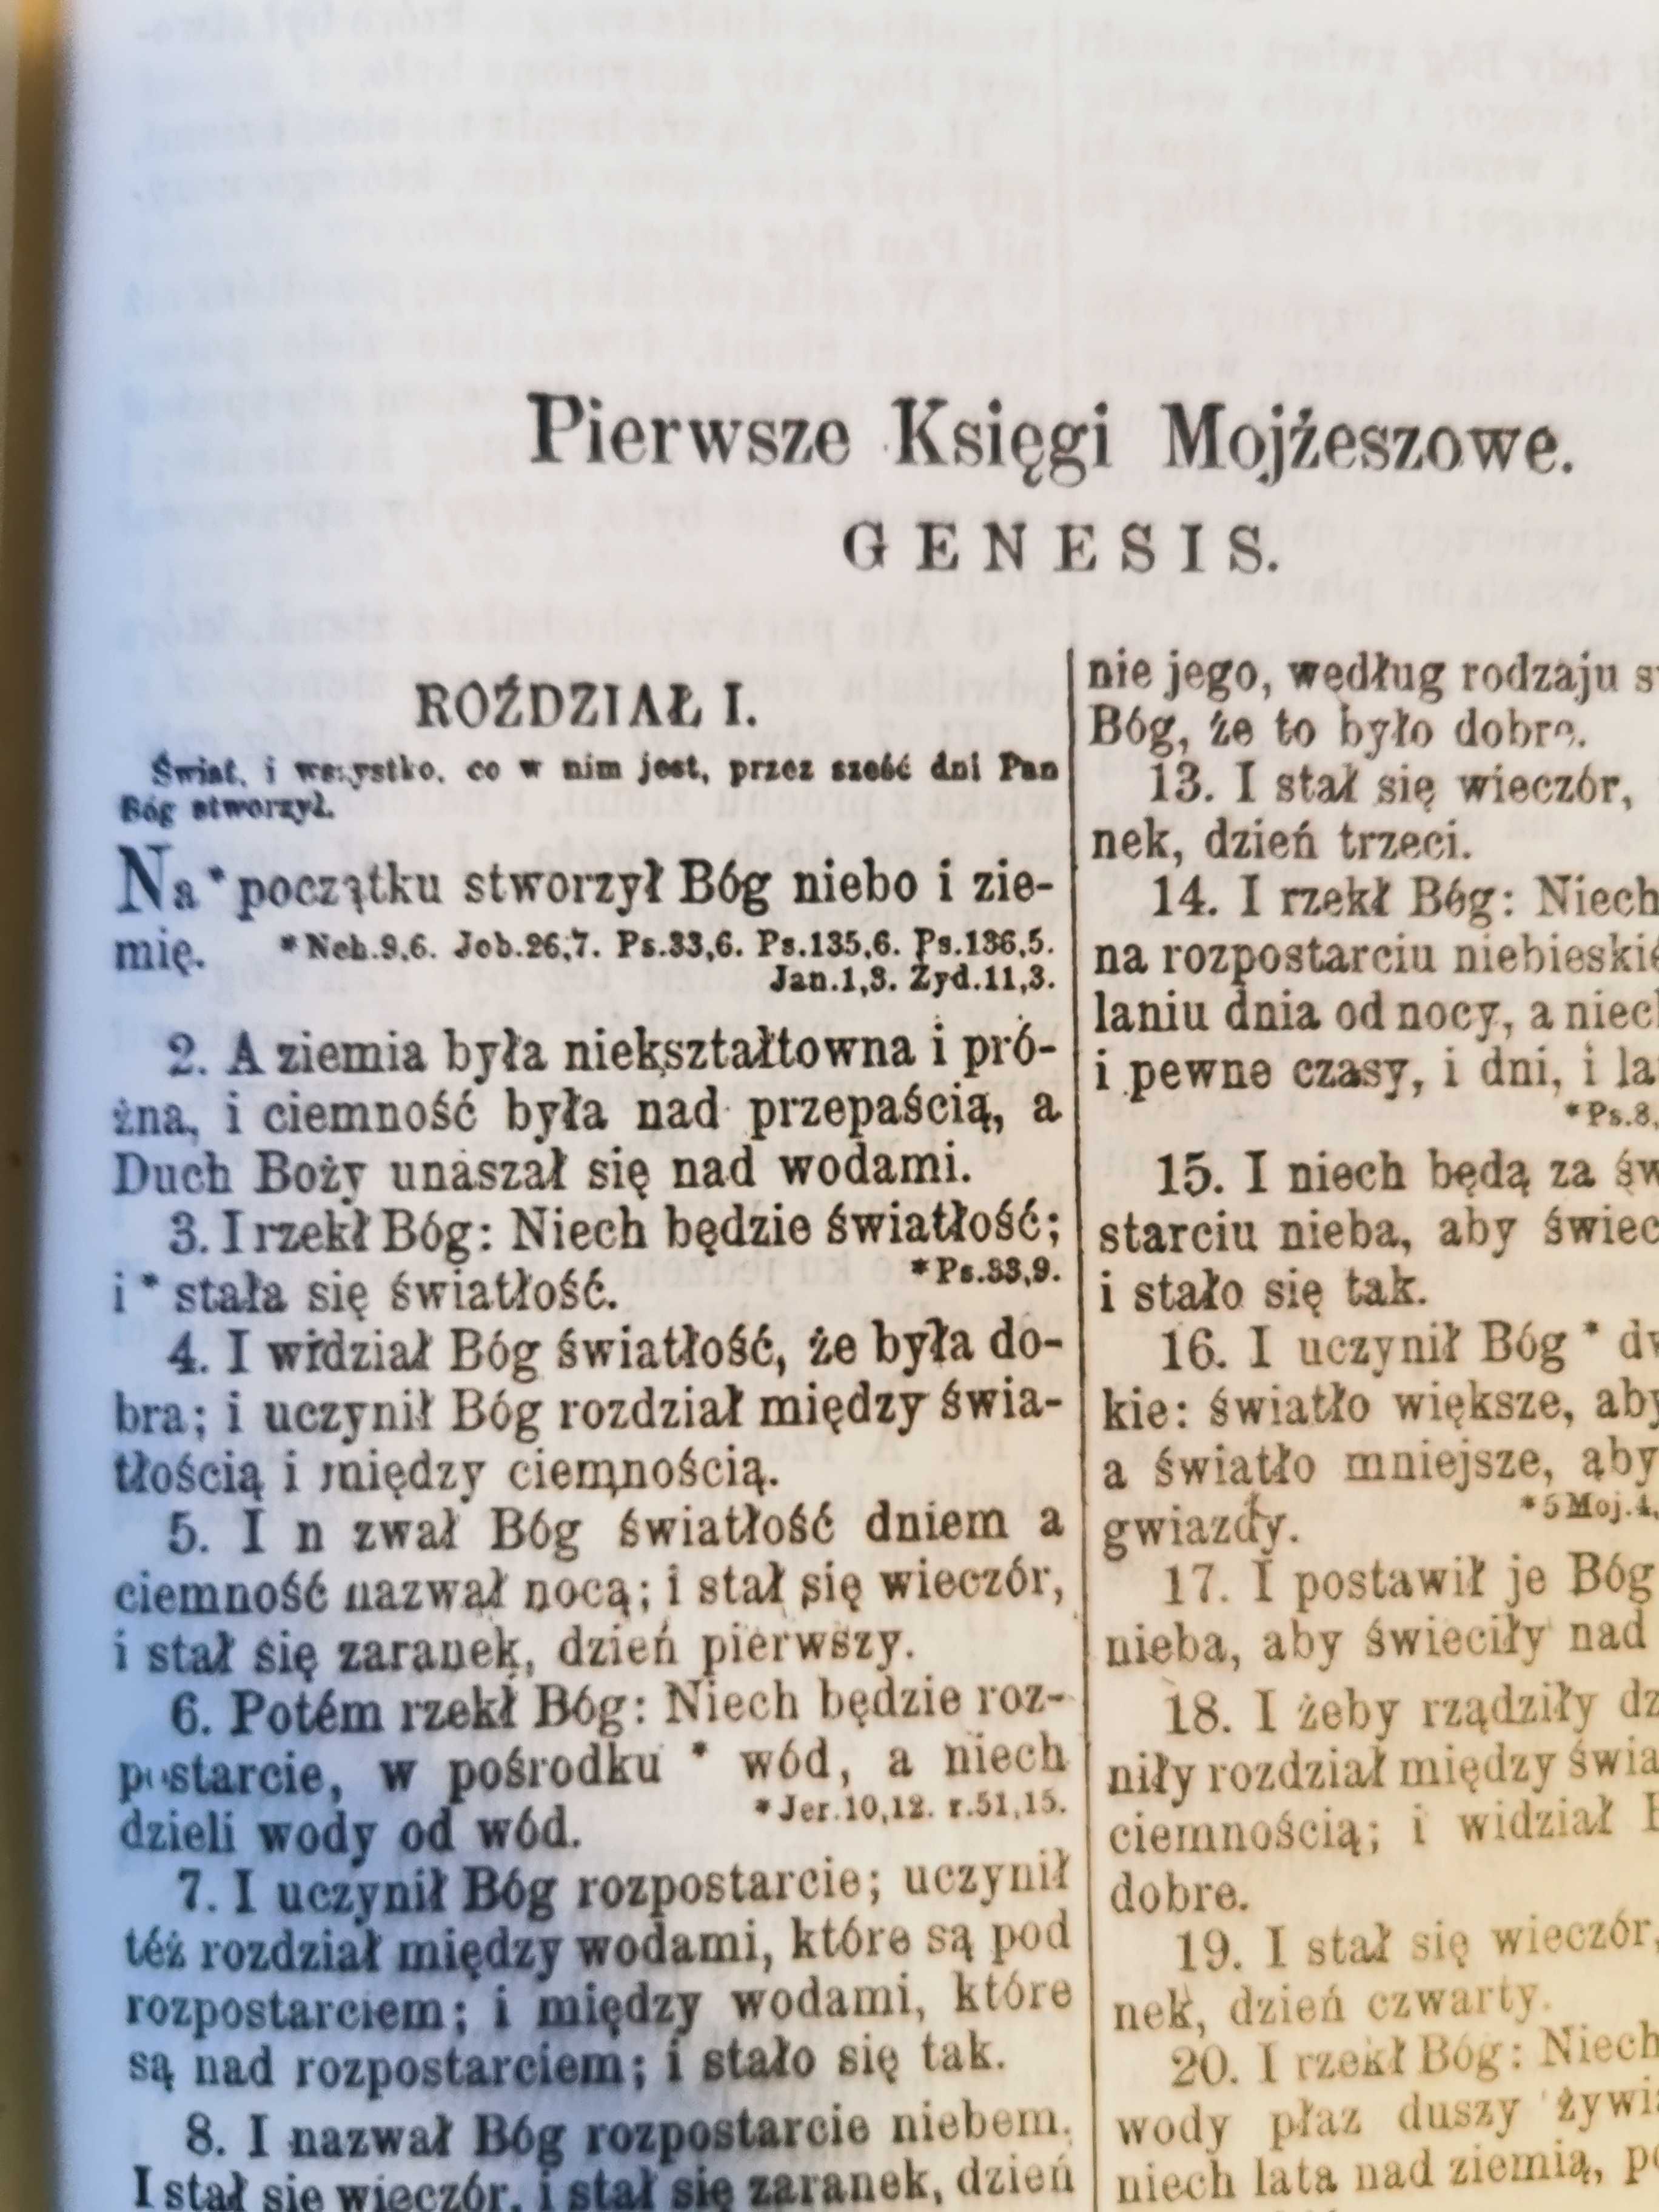 Biblia Gdańska stara wydanie z 1959 r. średni format